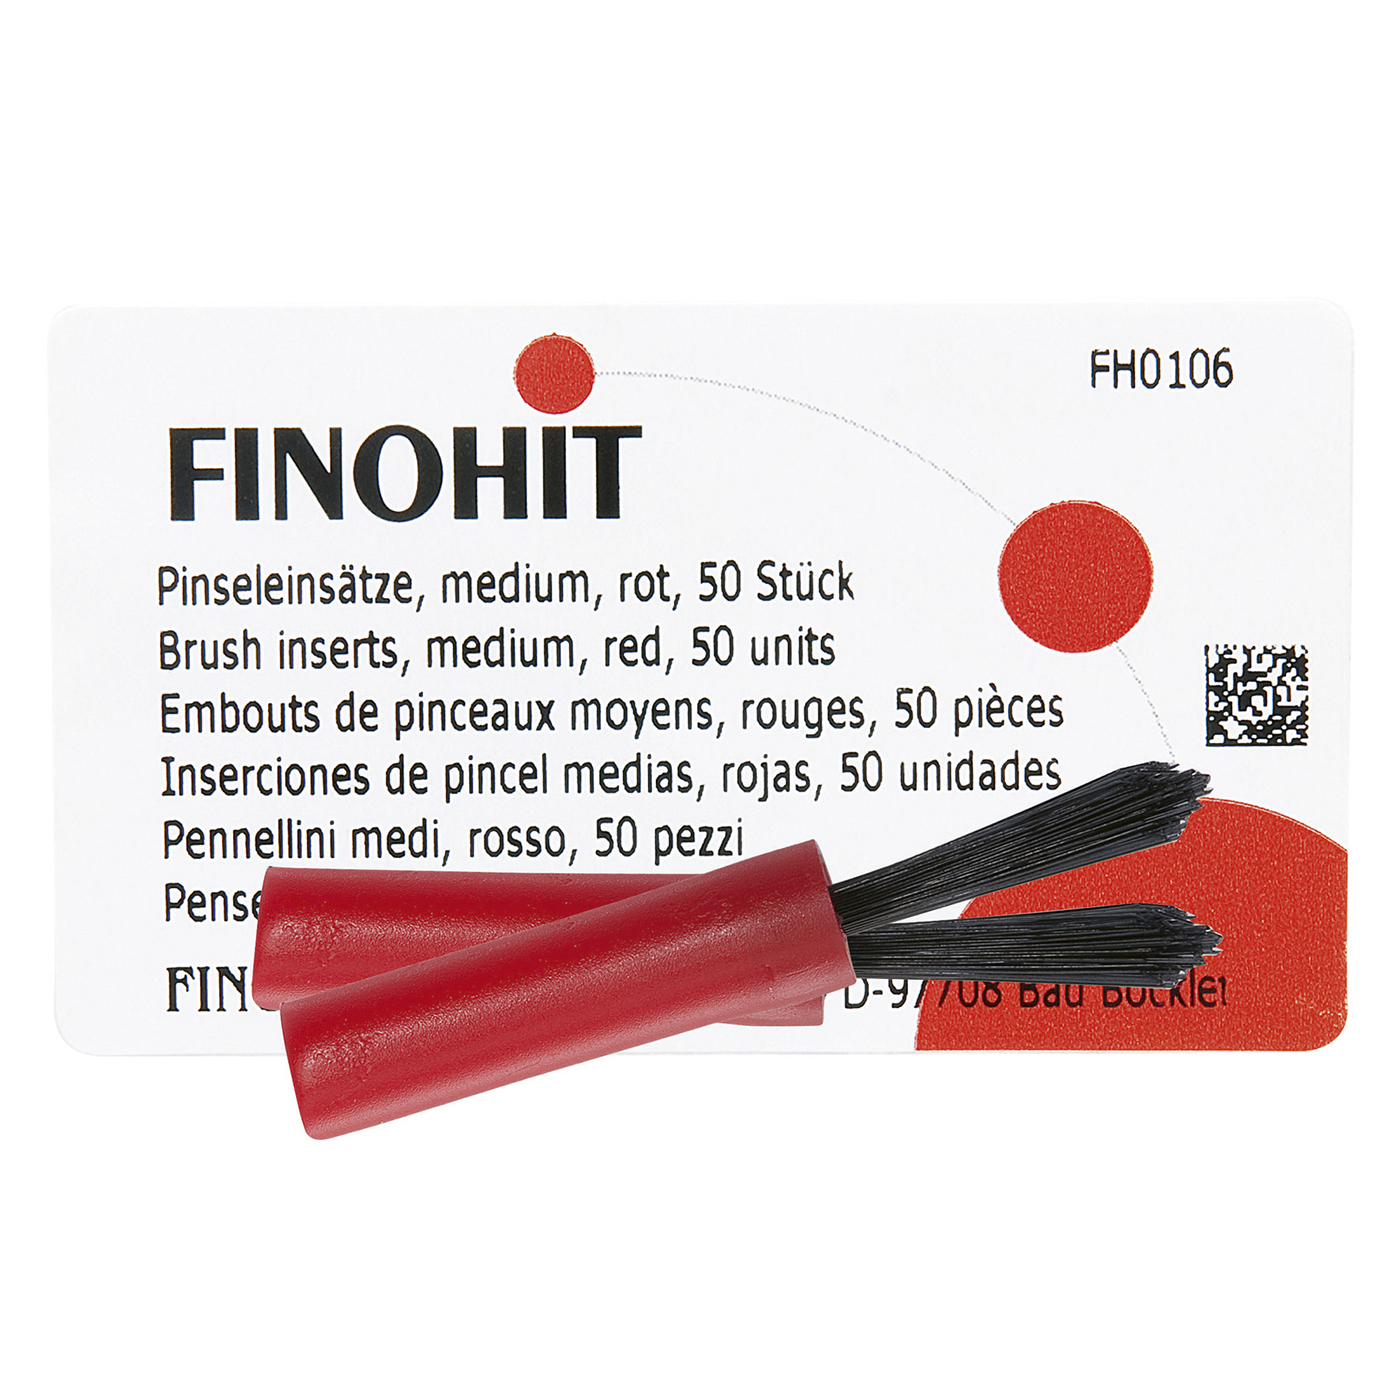 FINOHIT Brush Tips, Medium, Red - 50 pieces